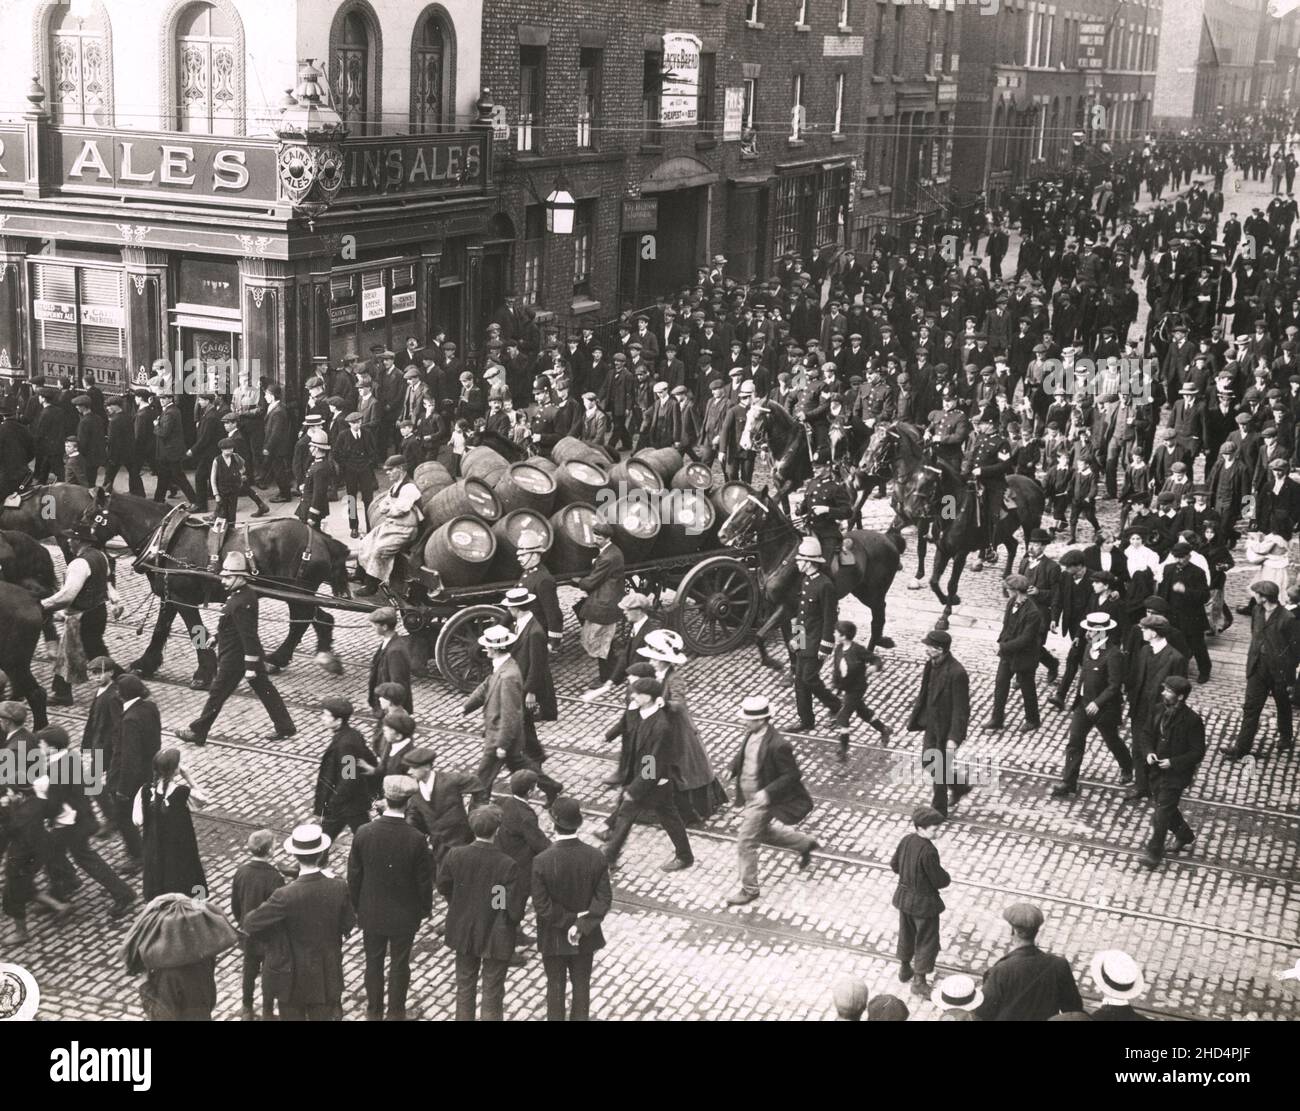 Photographie de presse vintage du début du 20th siècle : grève de travail des années 1920 au Royaume-Uni, la brasserie escorte de la police dératait les manifestants passés. Banque D'Images